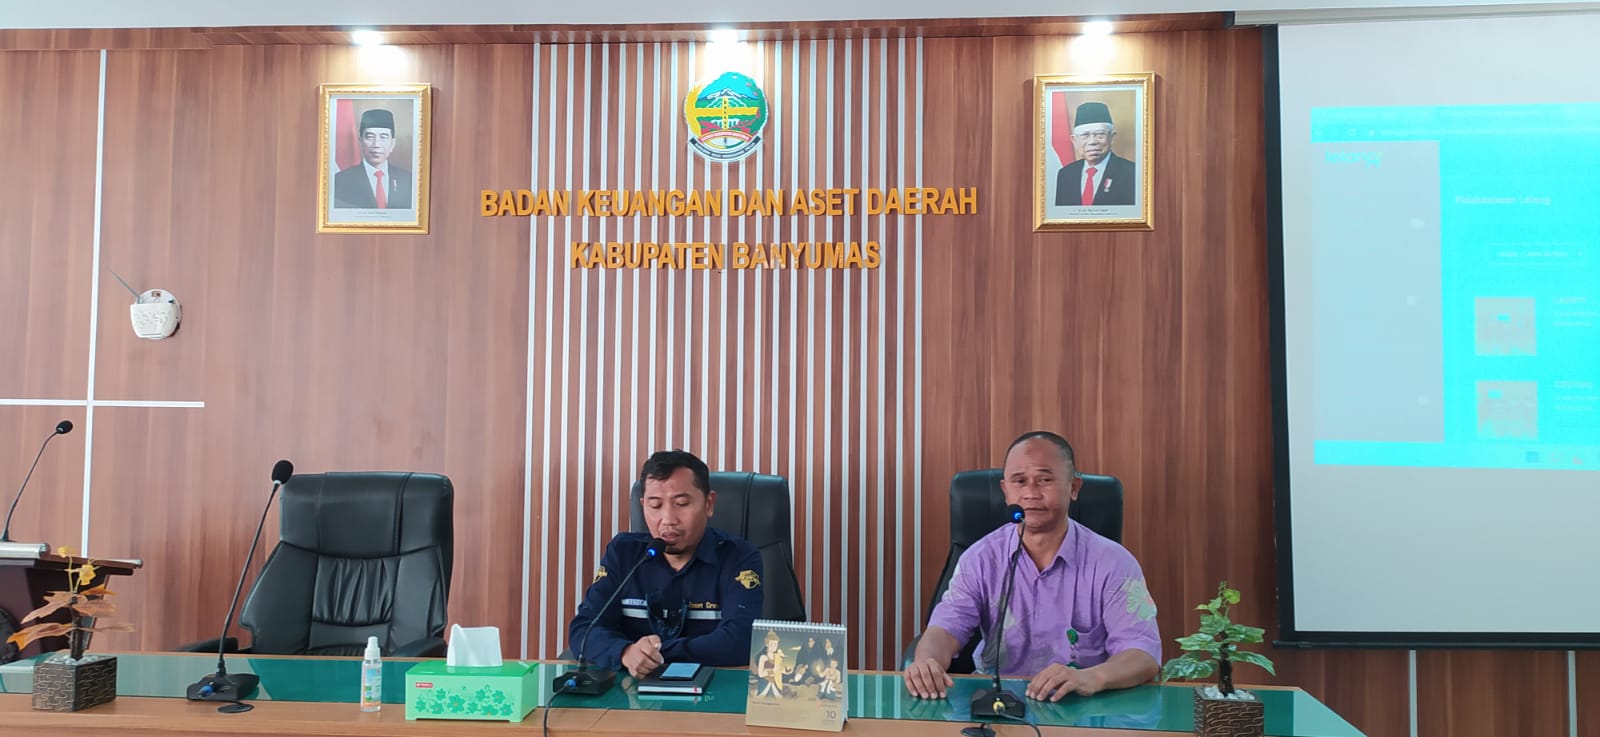 Laris Manis Tanjung Kimpul, Lelang BMD Pemkab Banyumas Habis Terjual dan Rp1,2 Milliar Terkumpul.